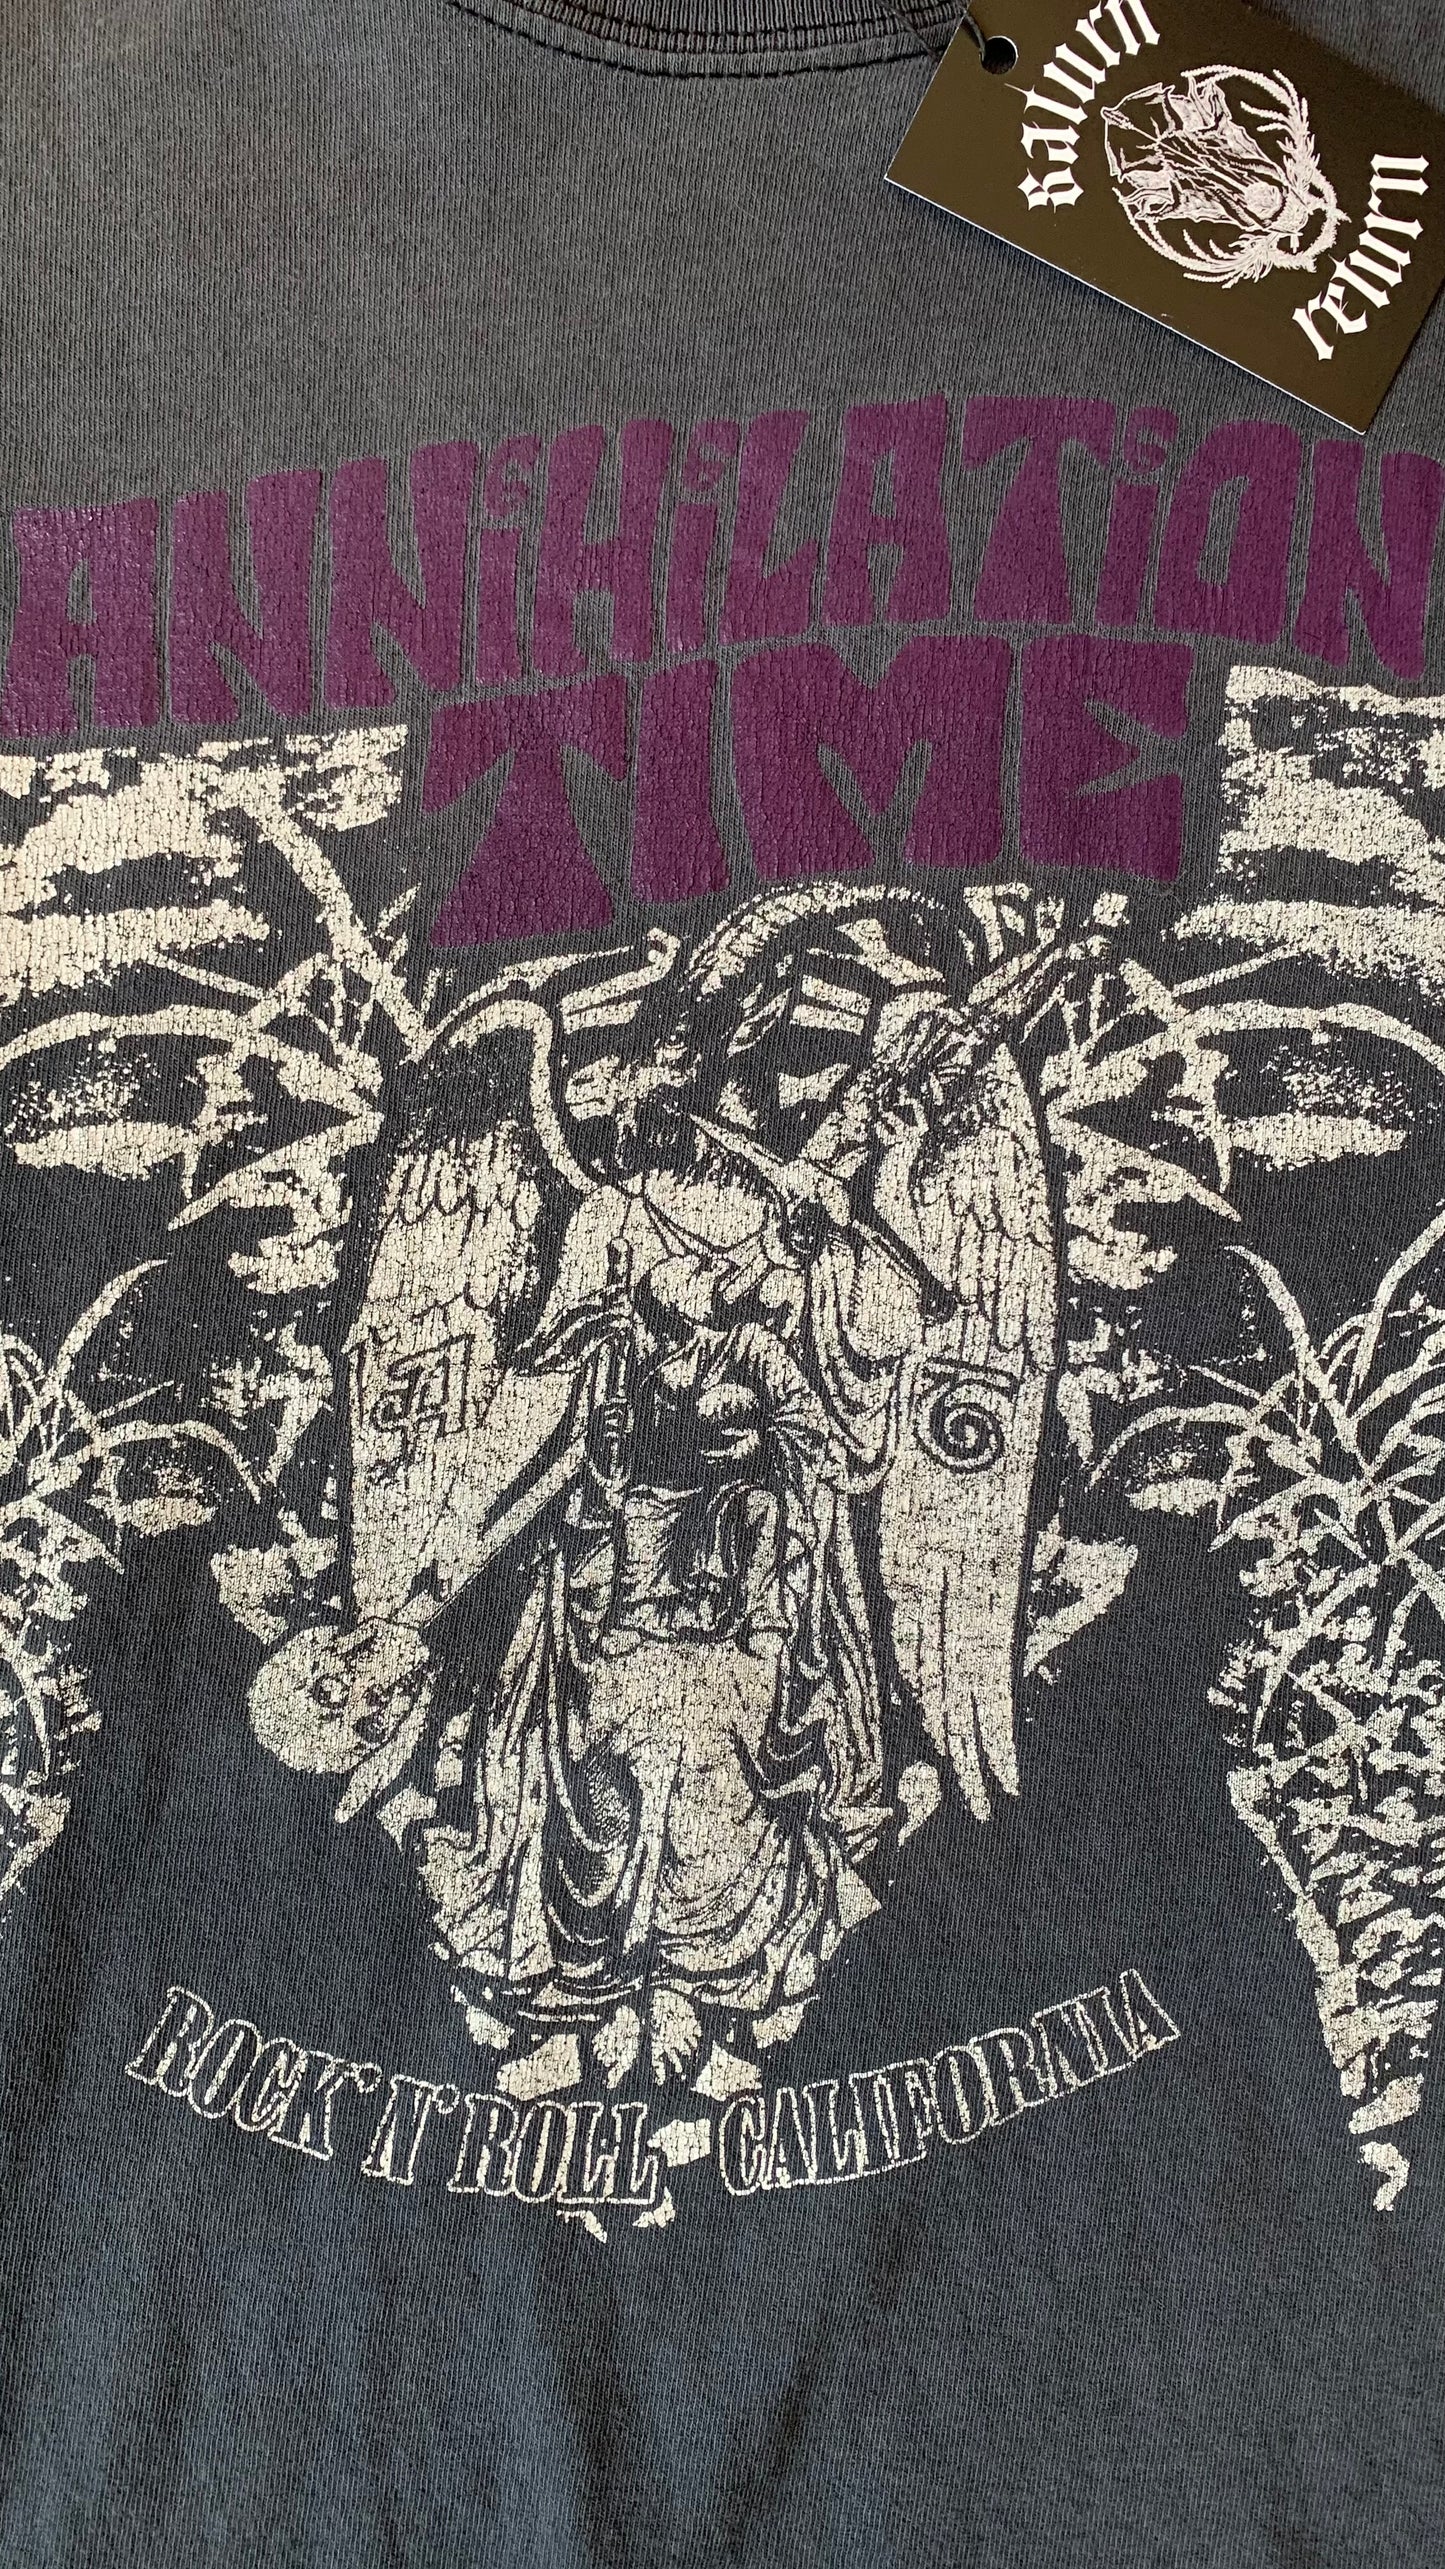 Rare 2003 Annihilation Time Rock n’ Roll California T-Shirt